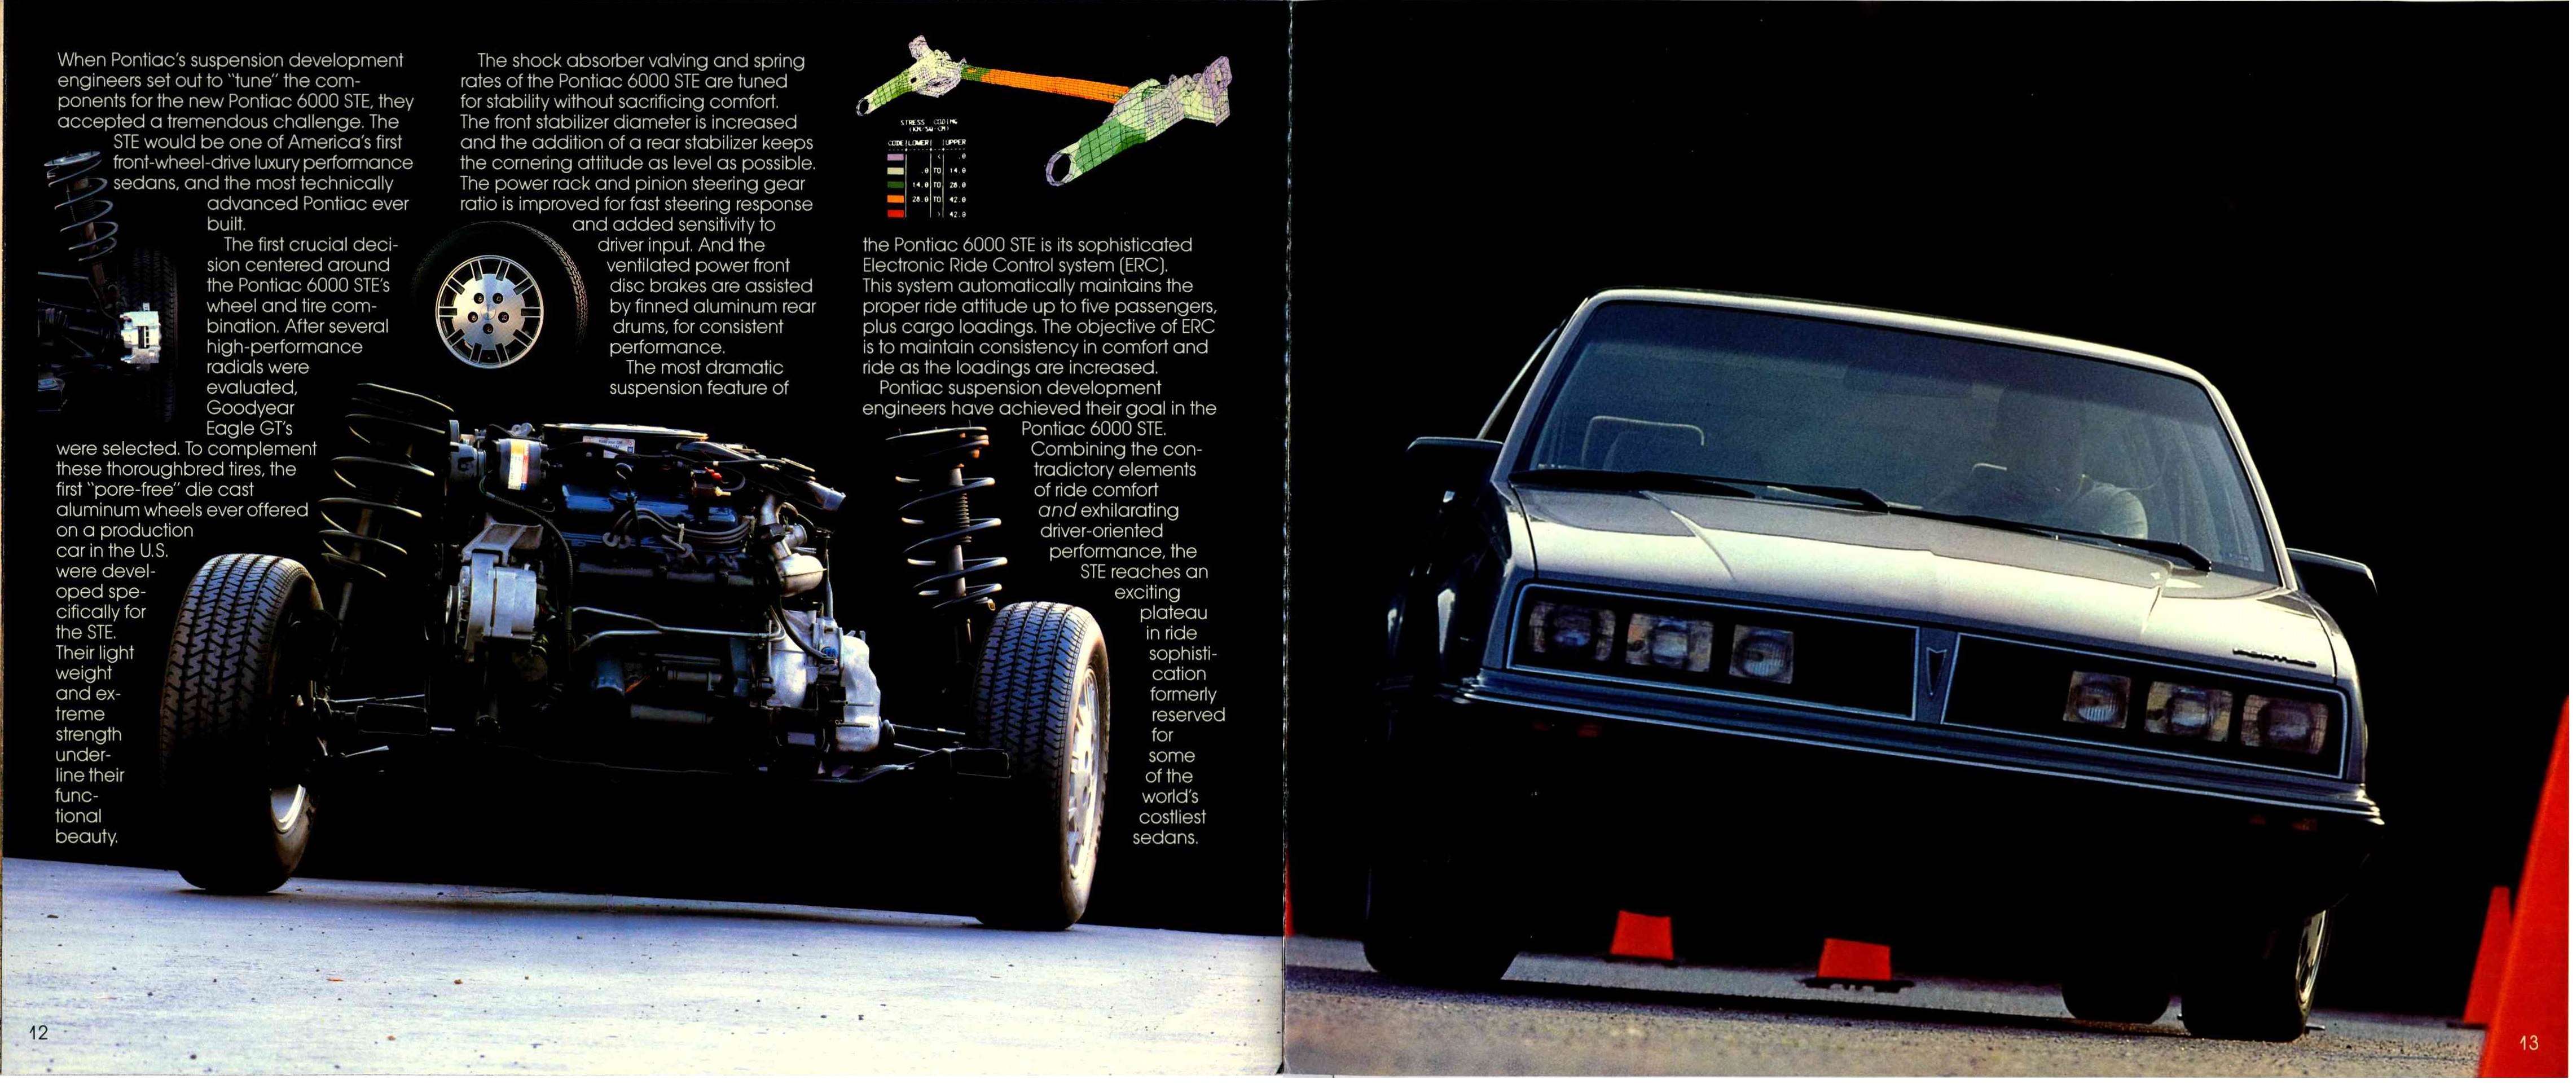 1983 Pontiac 6000 STE 12-13